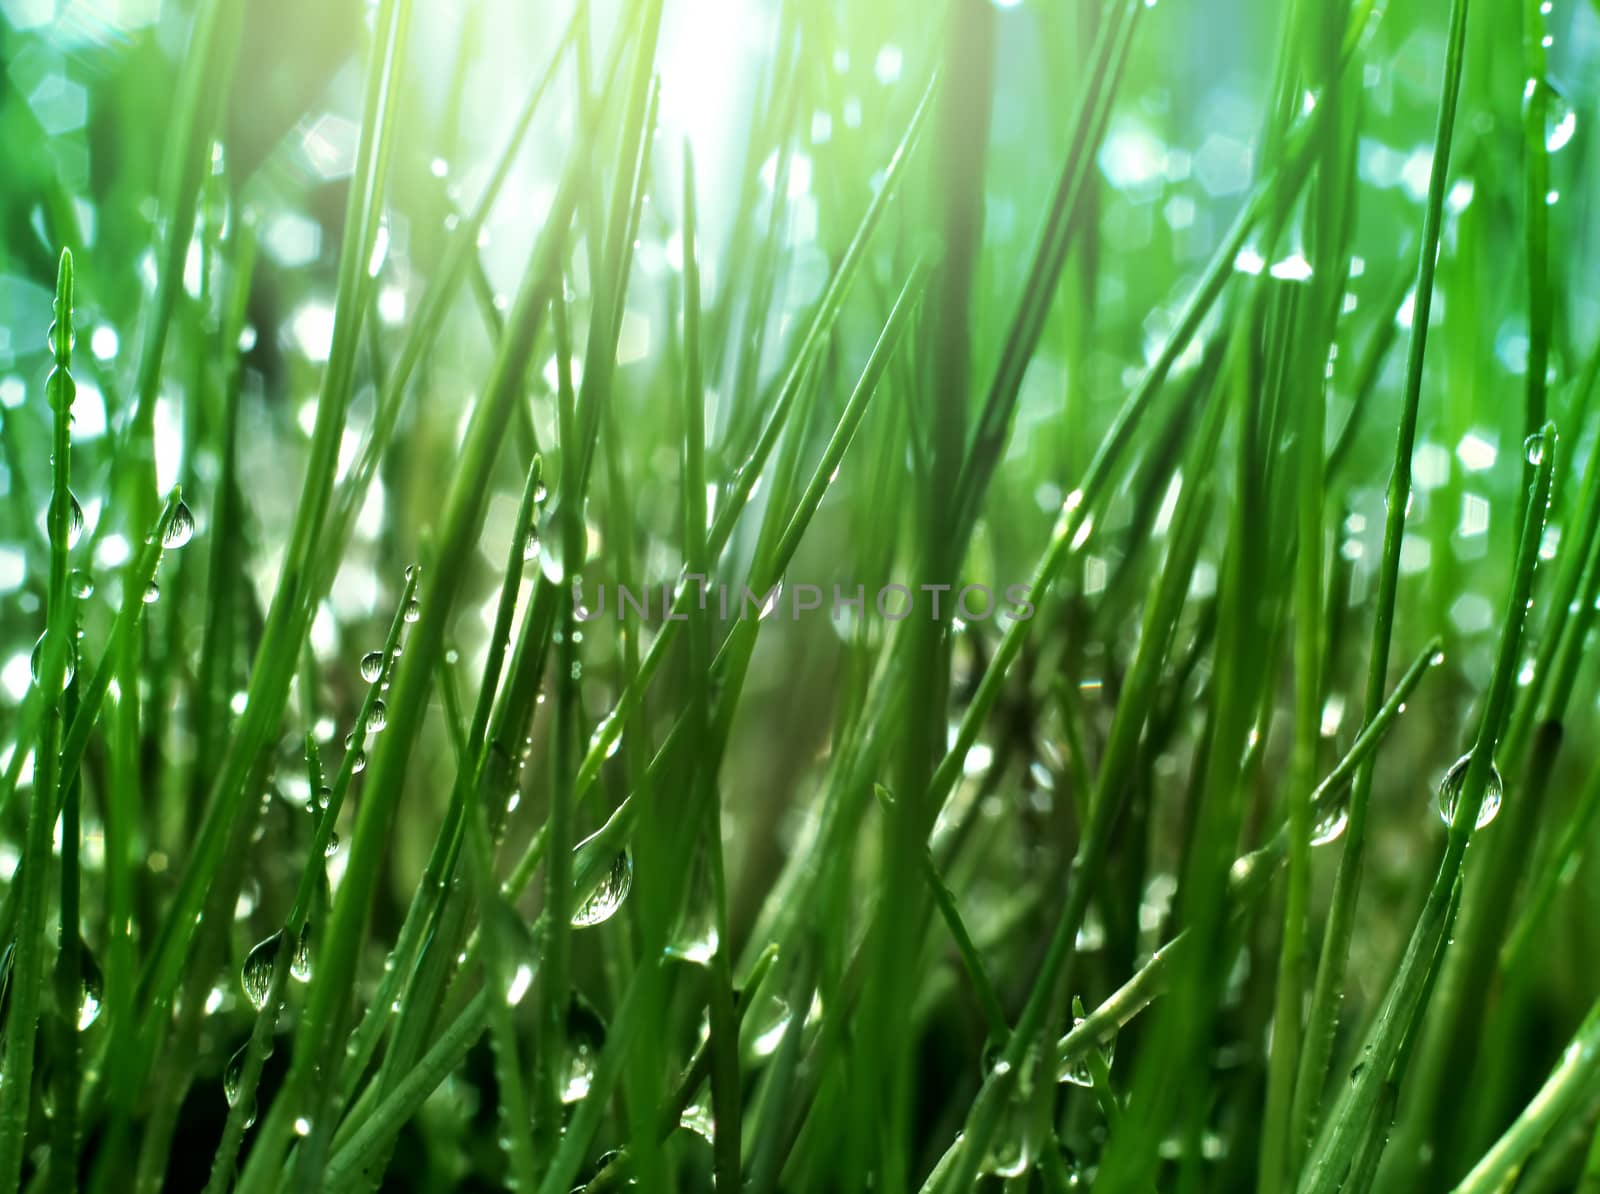 Inside fresh green grass by anterovium